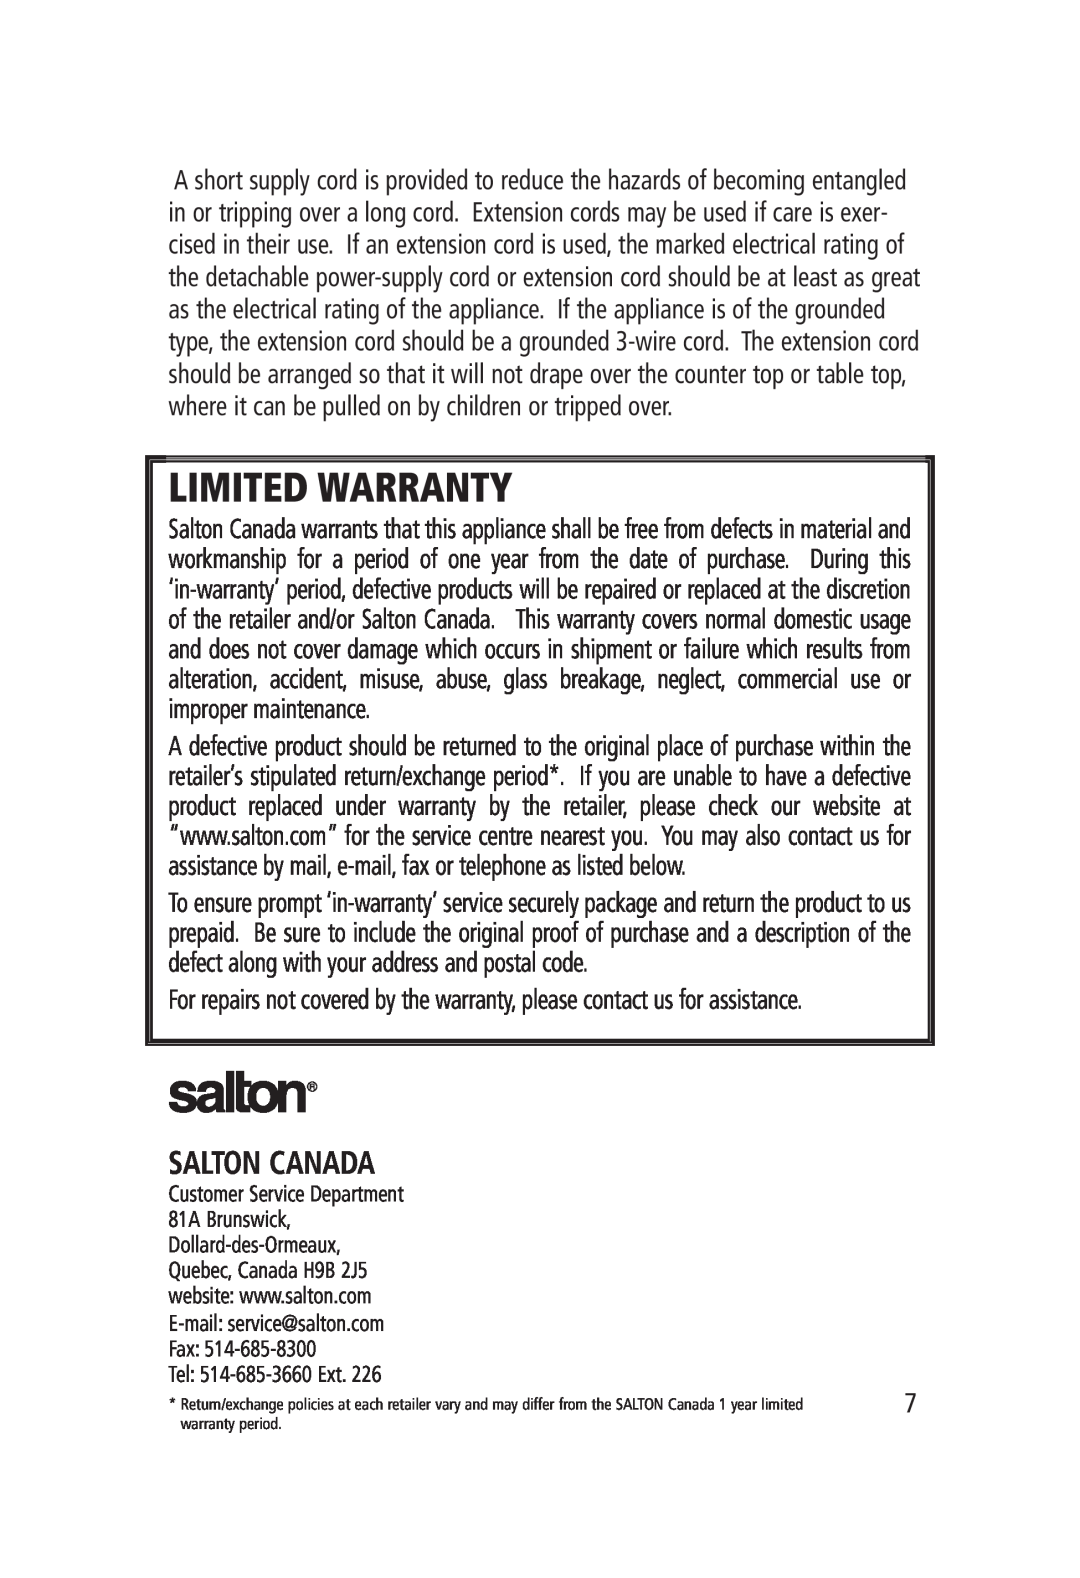 Salton FC-1180 manual Salton Canada, Limited Warranty 